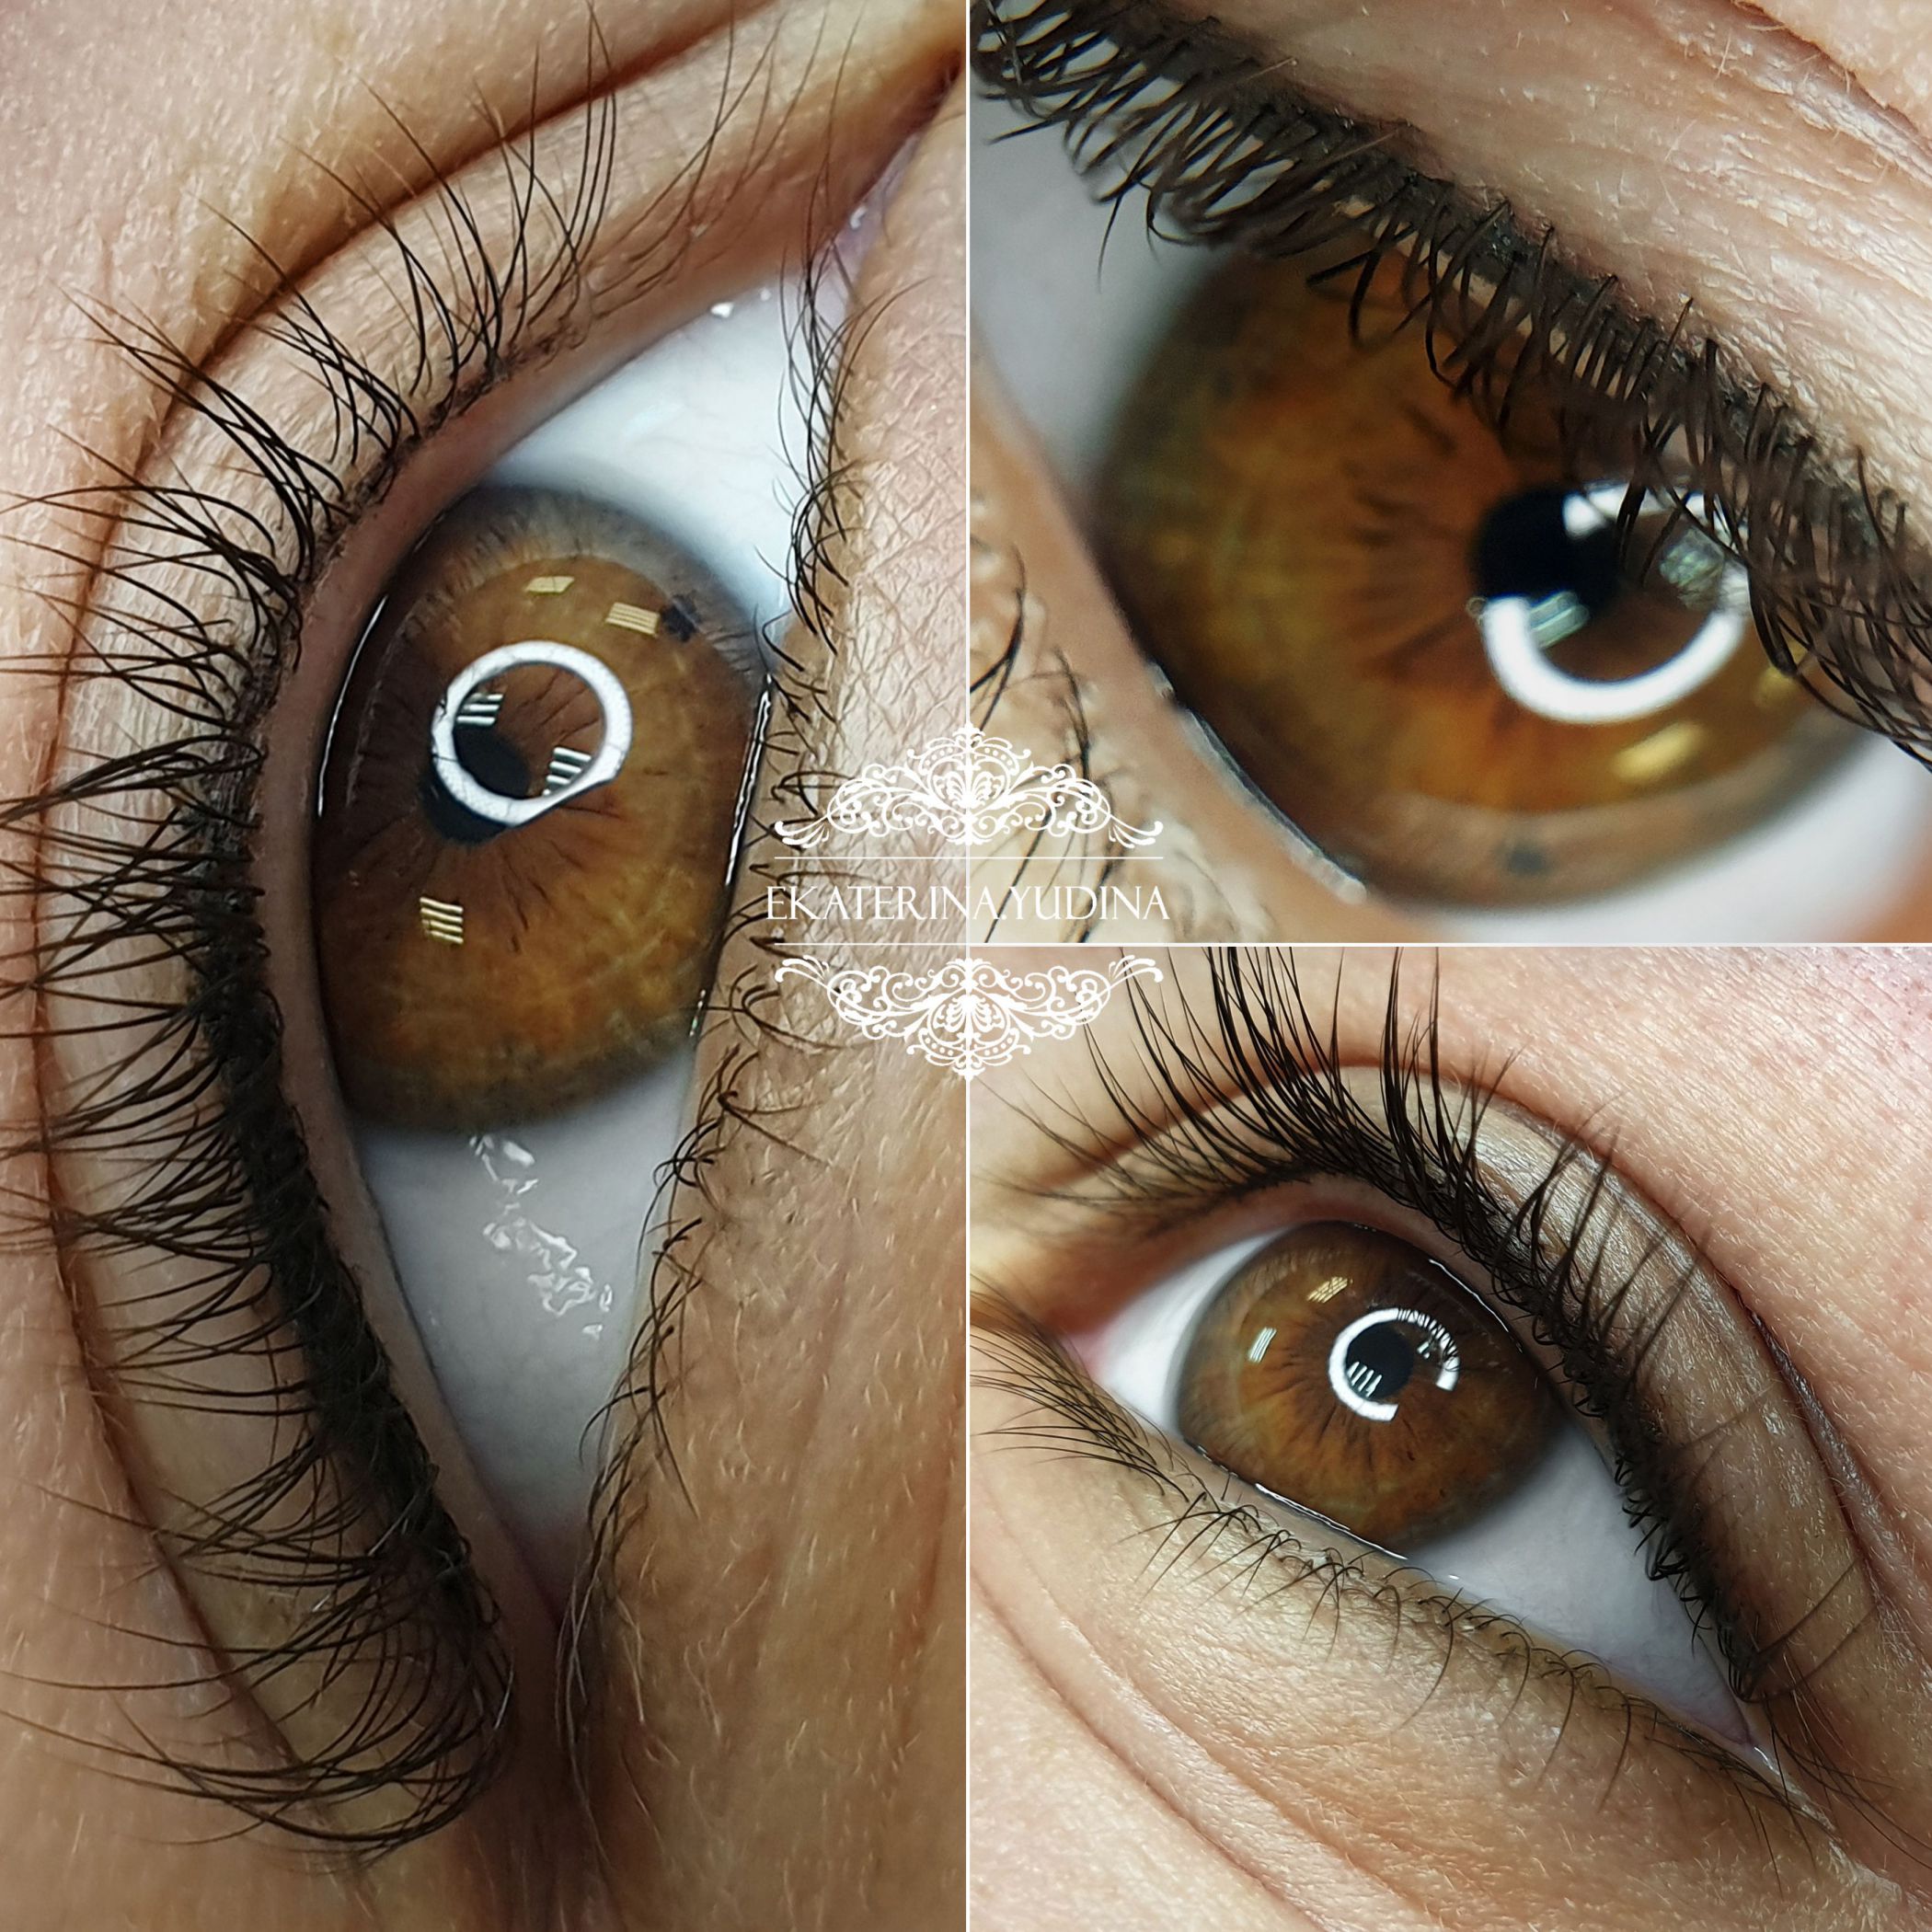 Татуаж глаз с растушевкой: фото до и после, как делают, этапы процедуры, сколько держится, отзывы